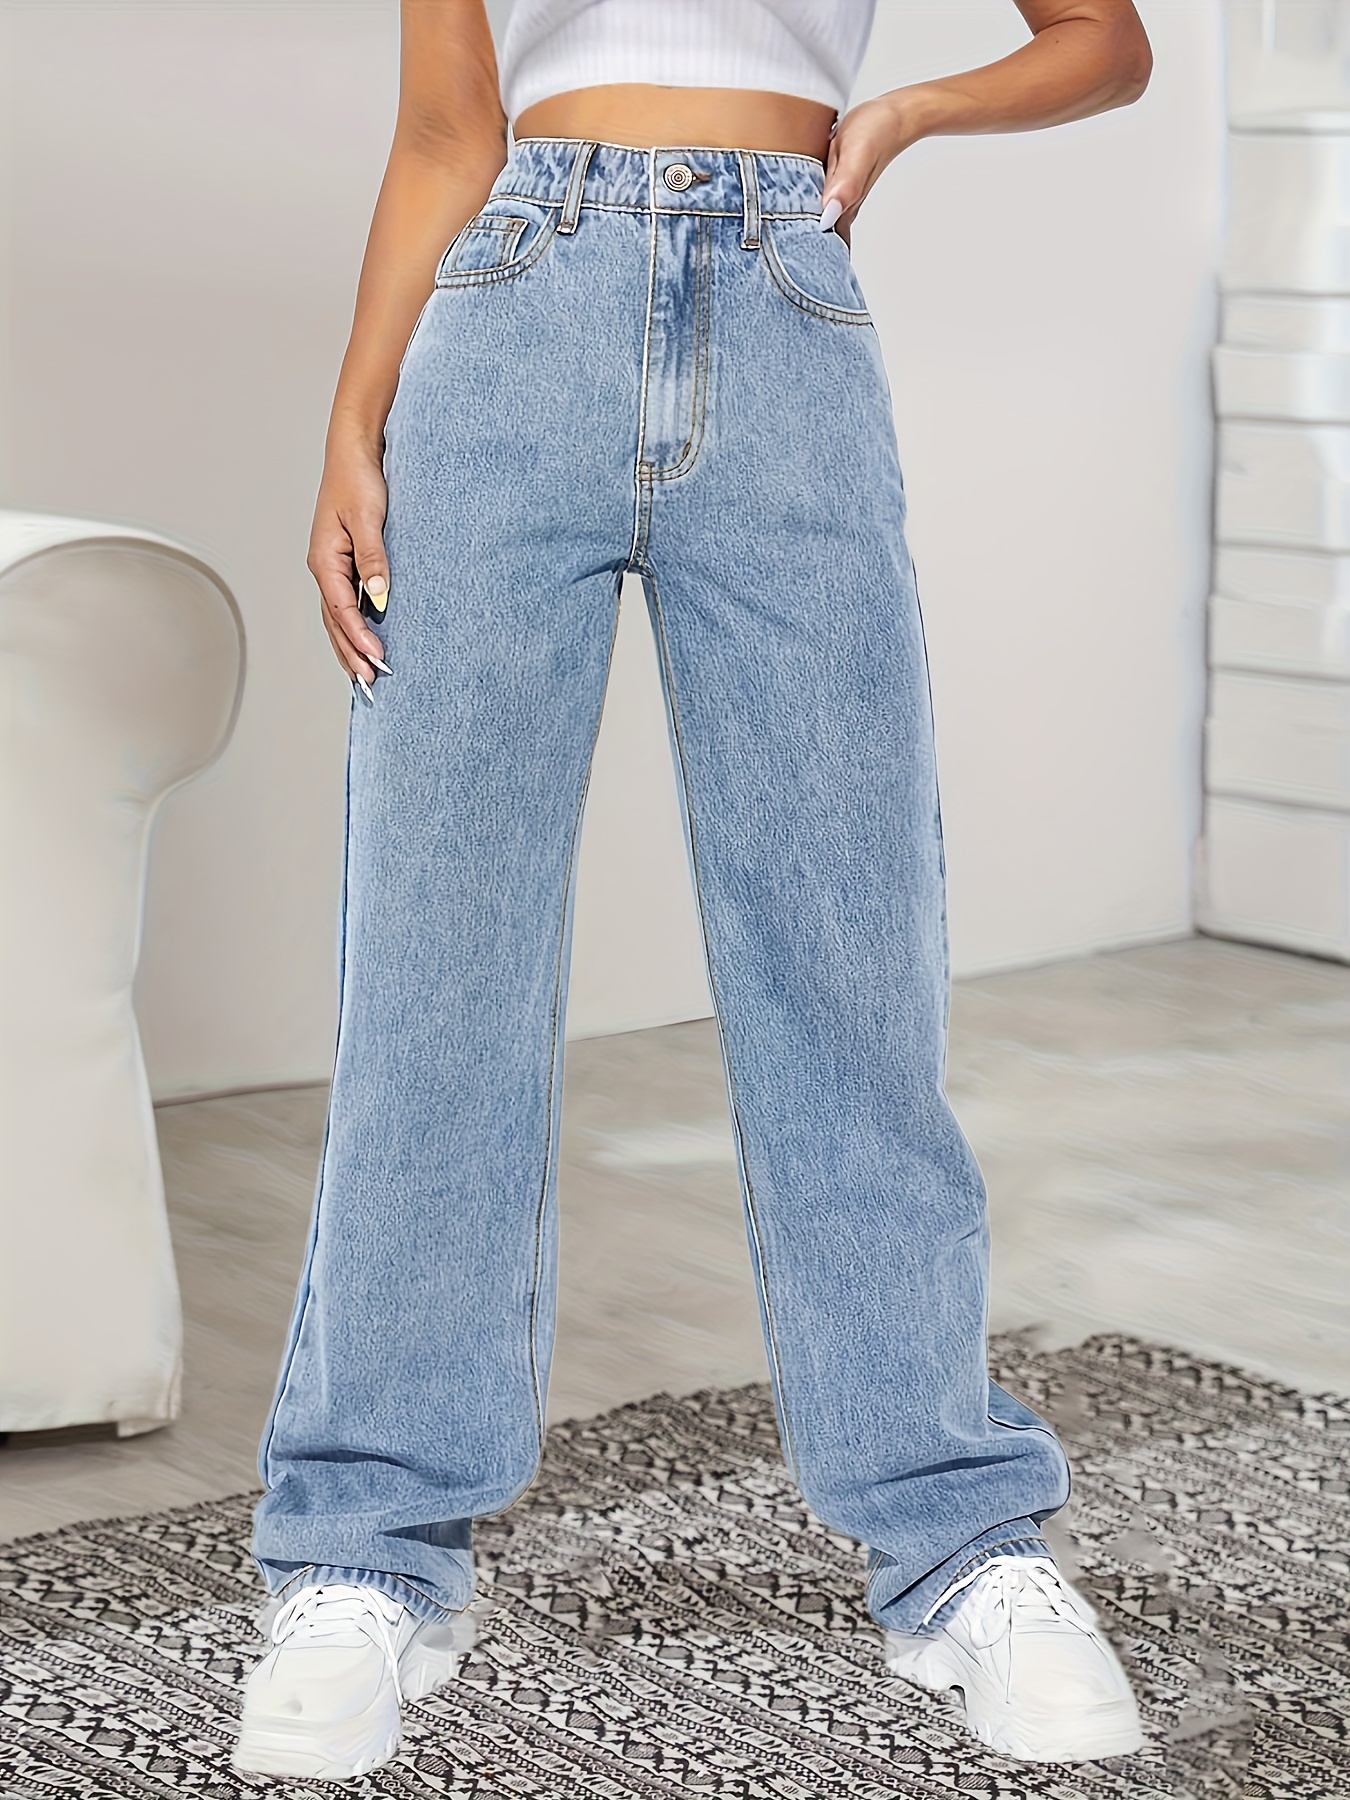 Wide Leg Jeans, Women's Denim